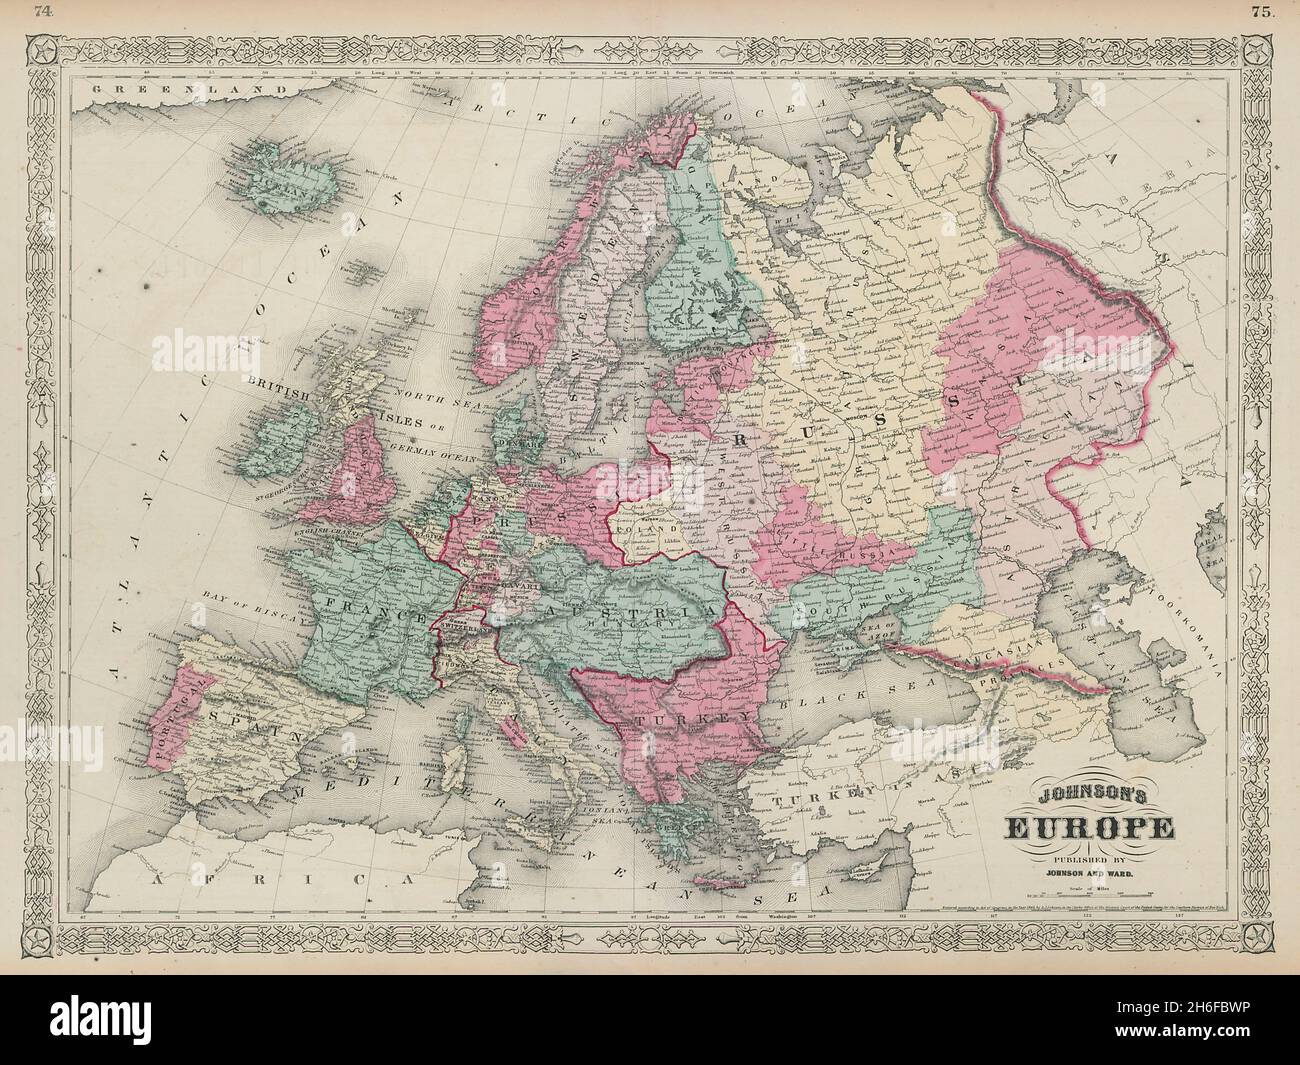 L'Europe de Johnson.Autriche Hongrie Prusse Turquie Etats papal 1865 ancienne carte Banque D'Images